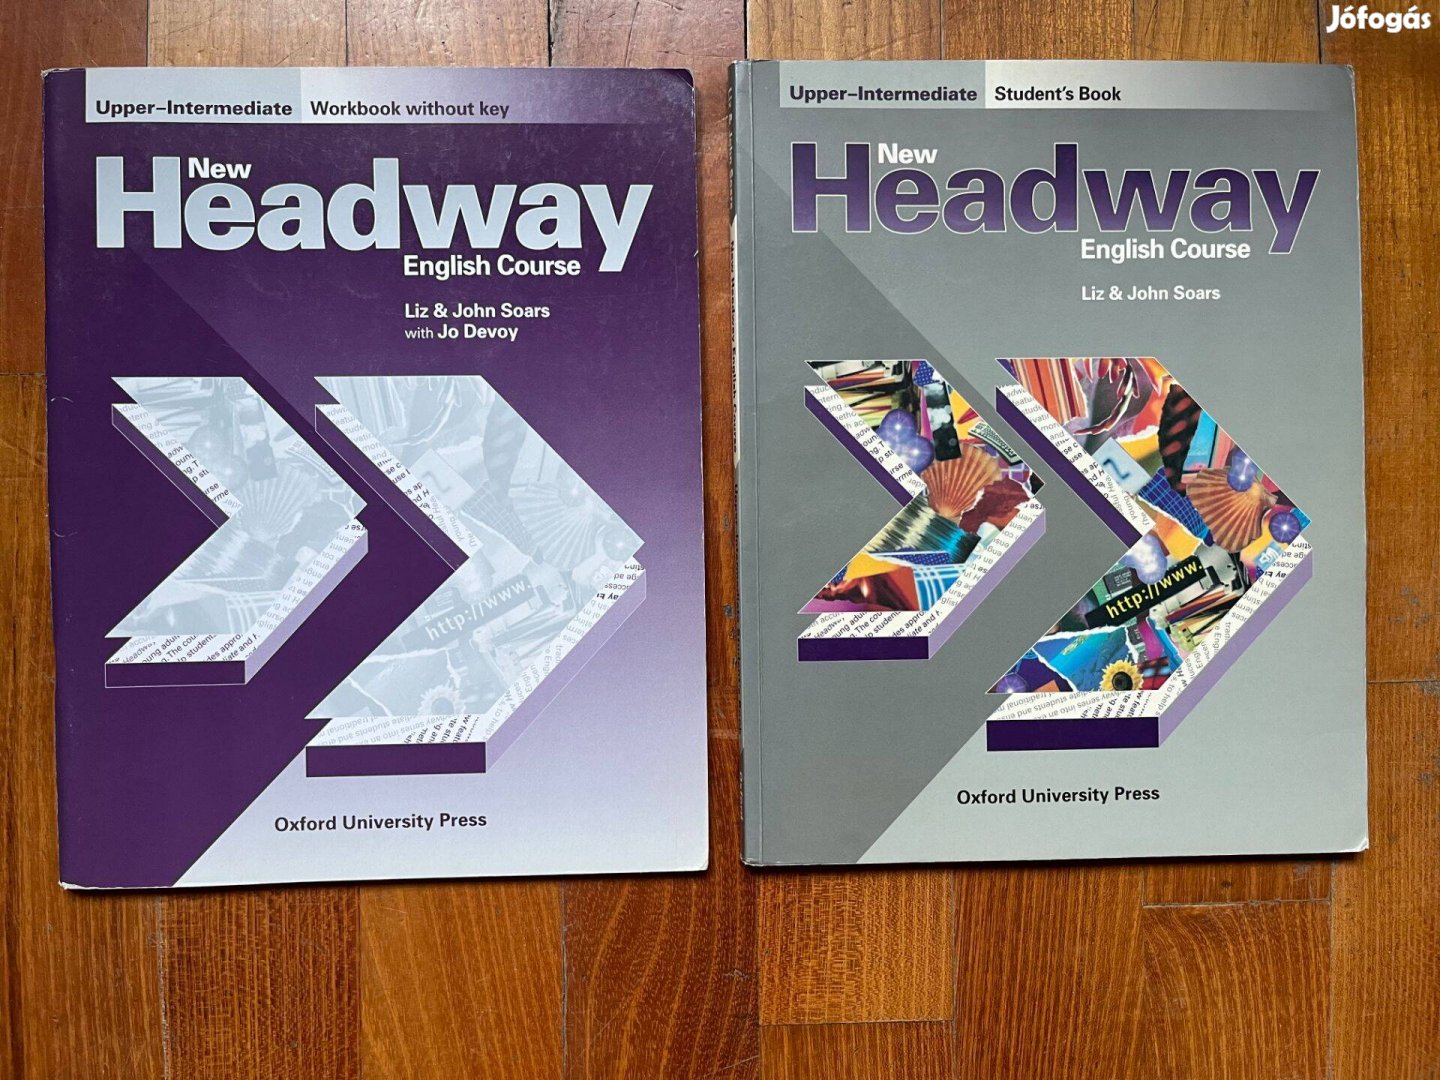 New Headway Upper-Intermediate könyv és munkafüzet együtt